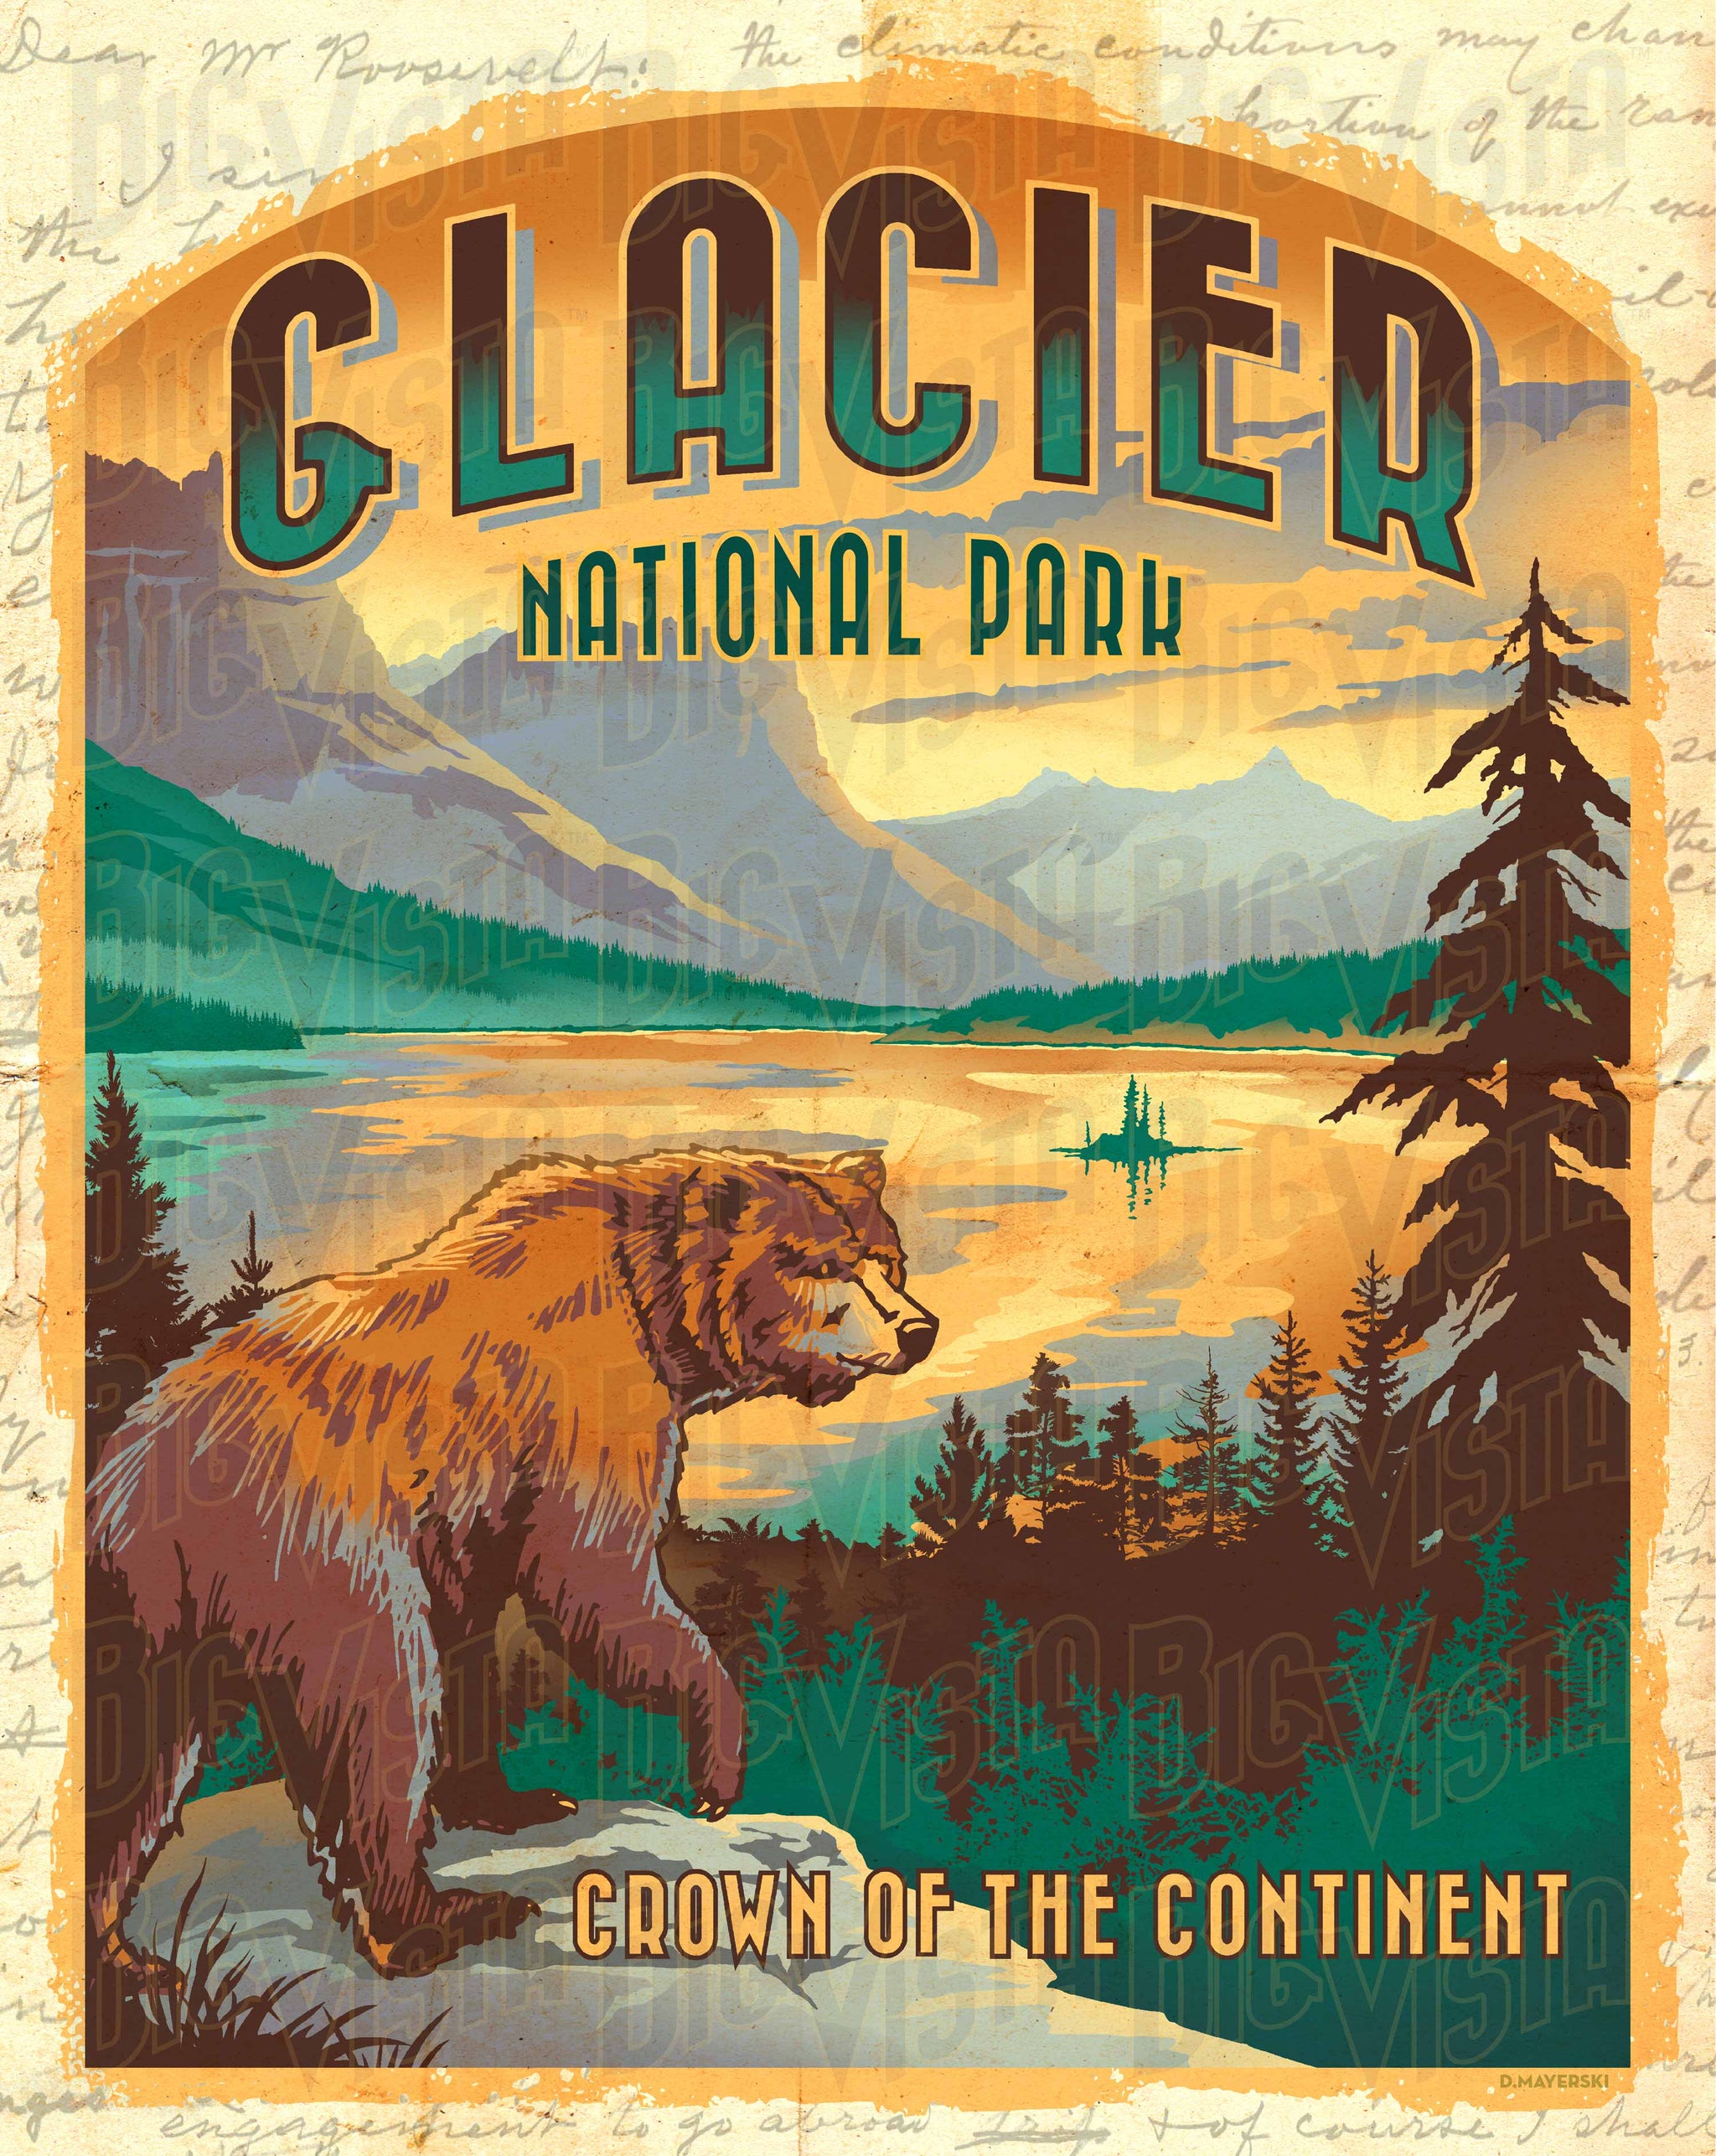 Big Glacier - Vista poster